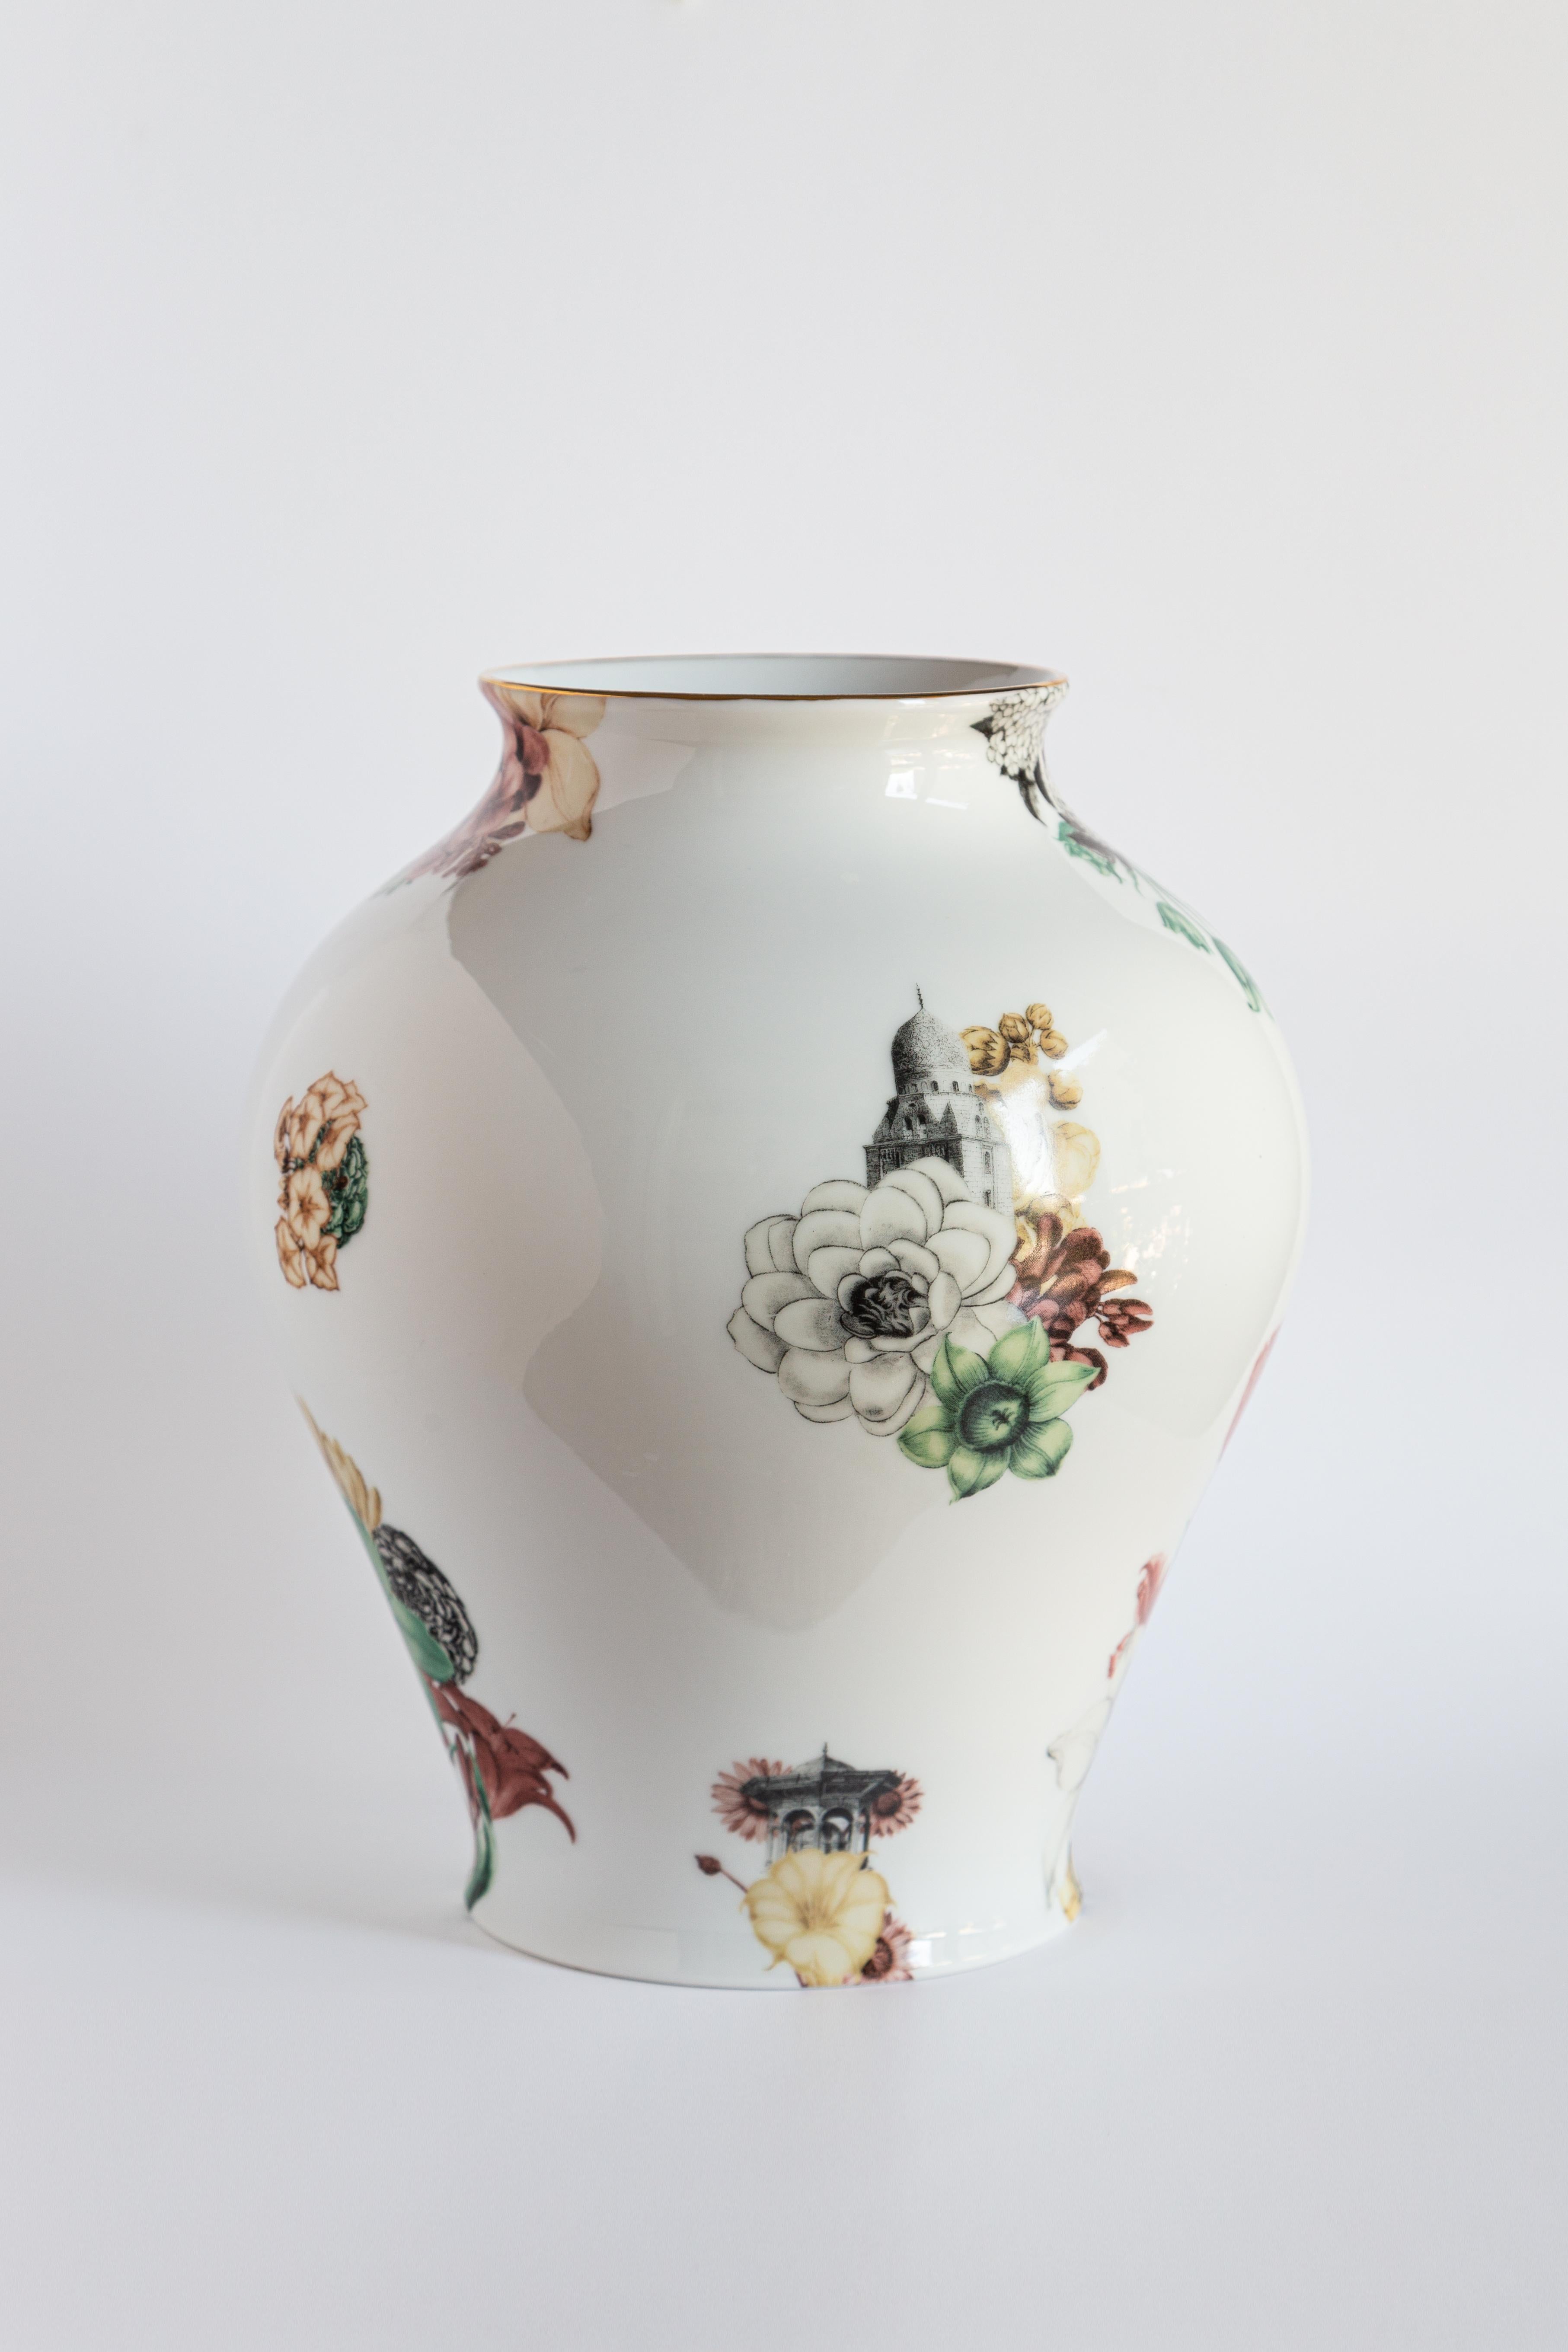 Das klassische Design dieser Porzellanvase wird durch Retro-Dekorationen mit zeitgenössischer Note wieder zum Leben erweckt. Blumen und nahöstliche Architekturen passen in diesem verträumten Design zusammen.